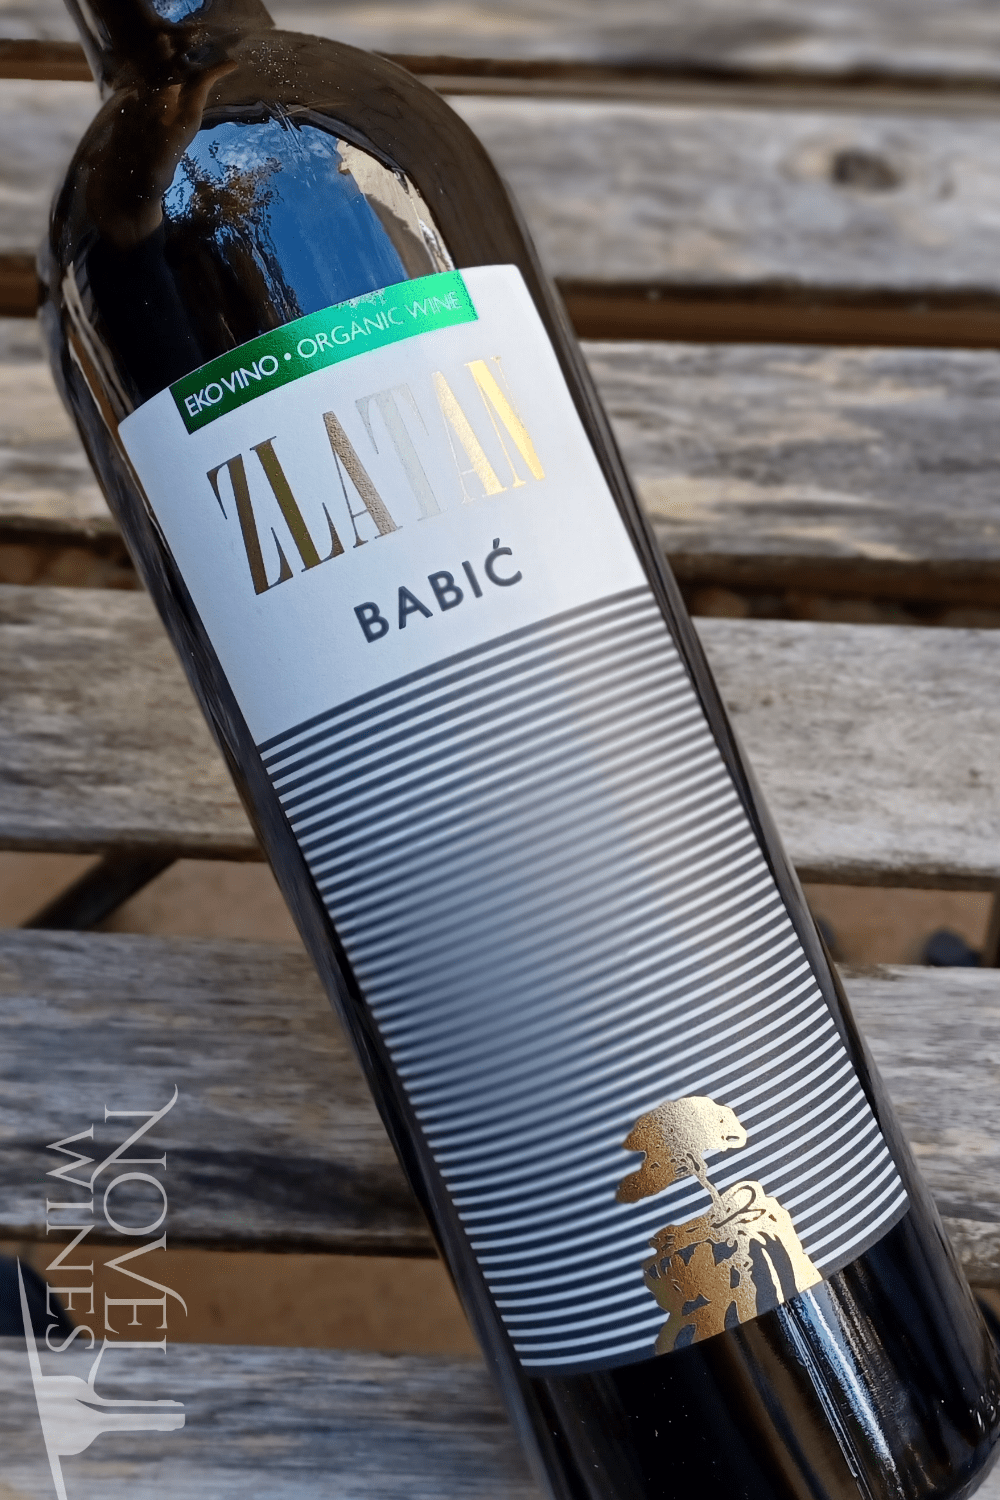 Novel Wines Zlatan Otok Babic Organic 2014, Croatia